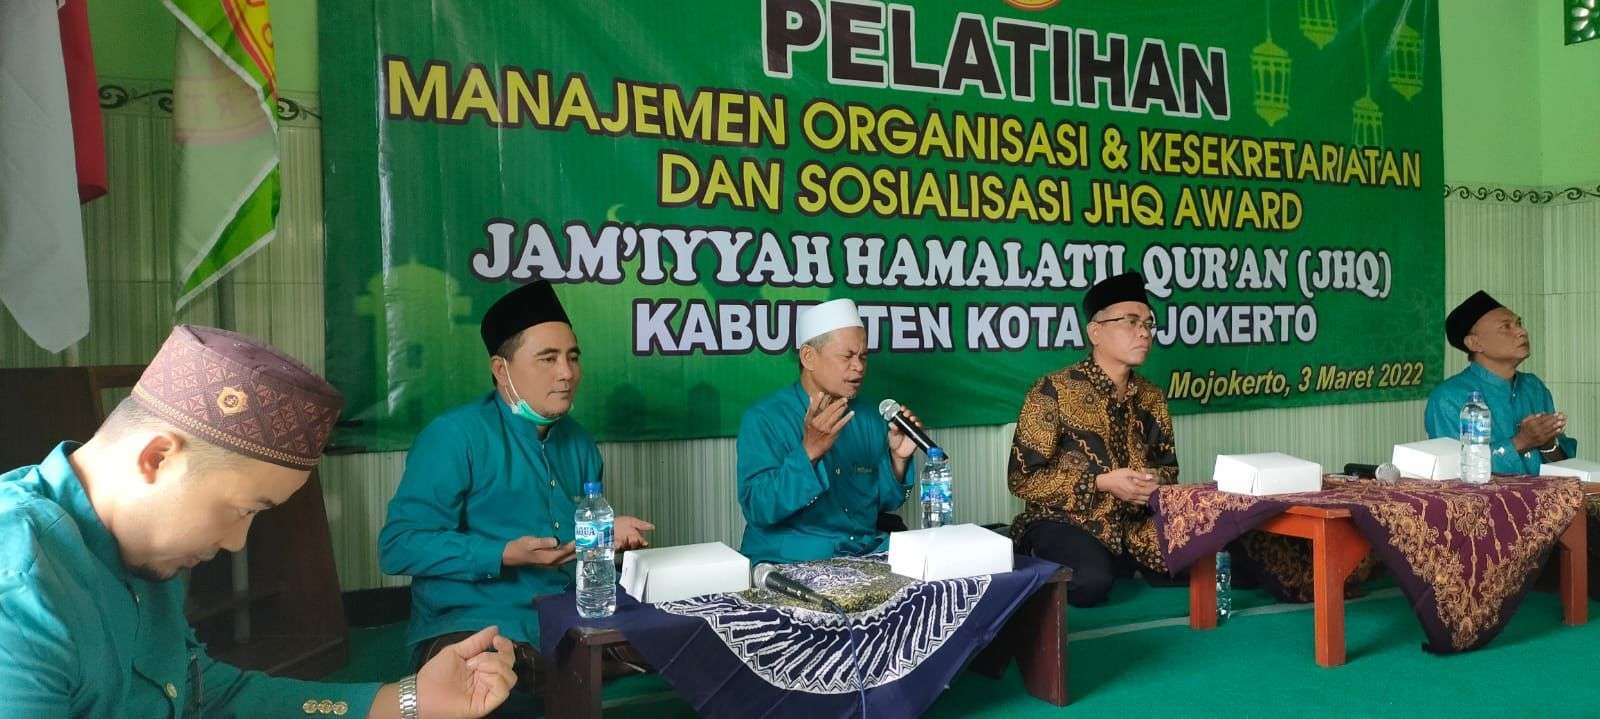 Pelatihan manajemen organisasi dan sosialisasi JHQ Mojokerto, Jawa Timur. (Foto: Deni Lukmantara/Ngopibareng.id)